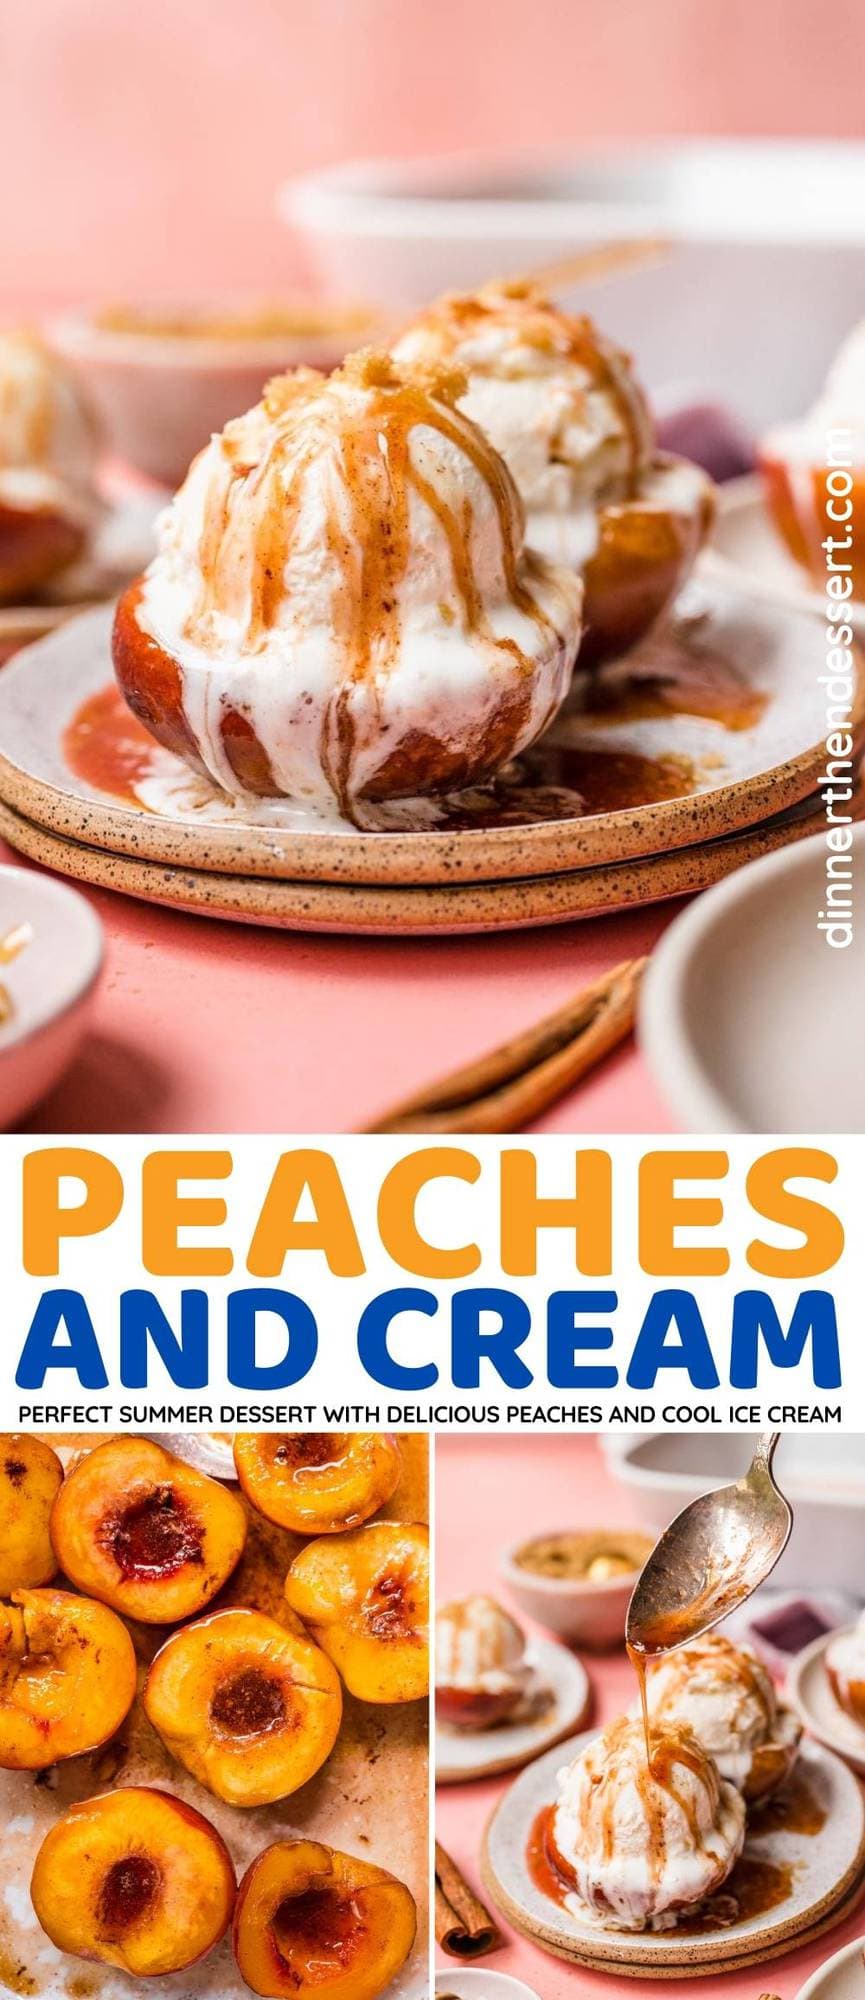 Peaches and Cream collage